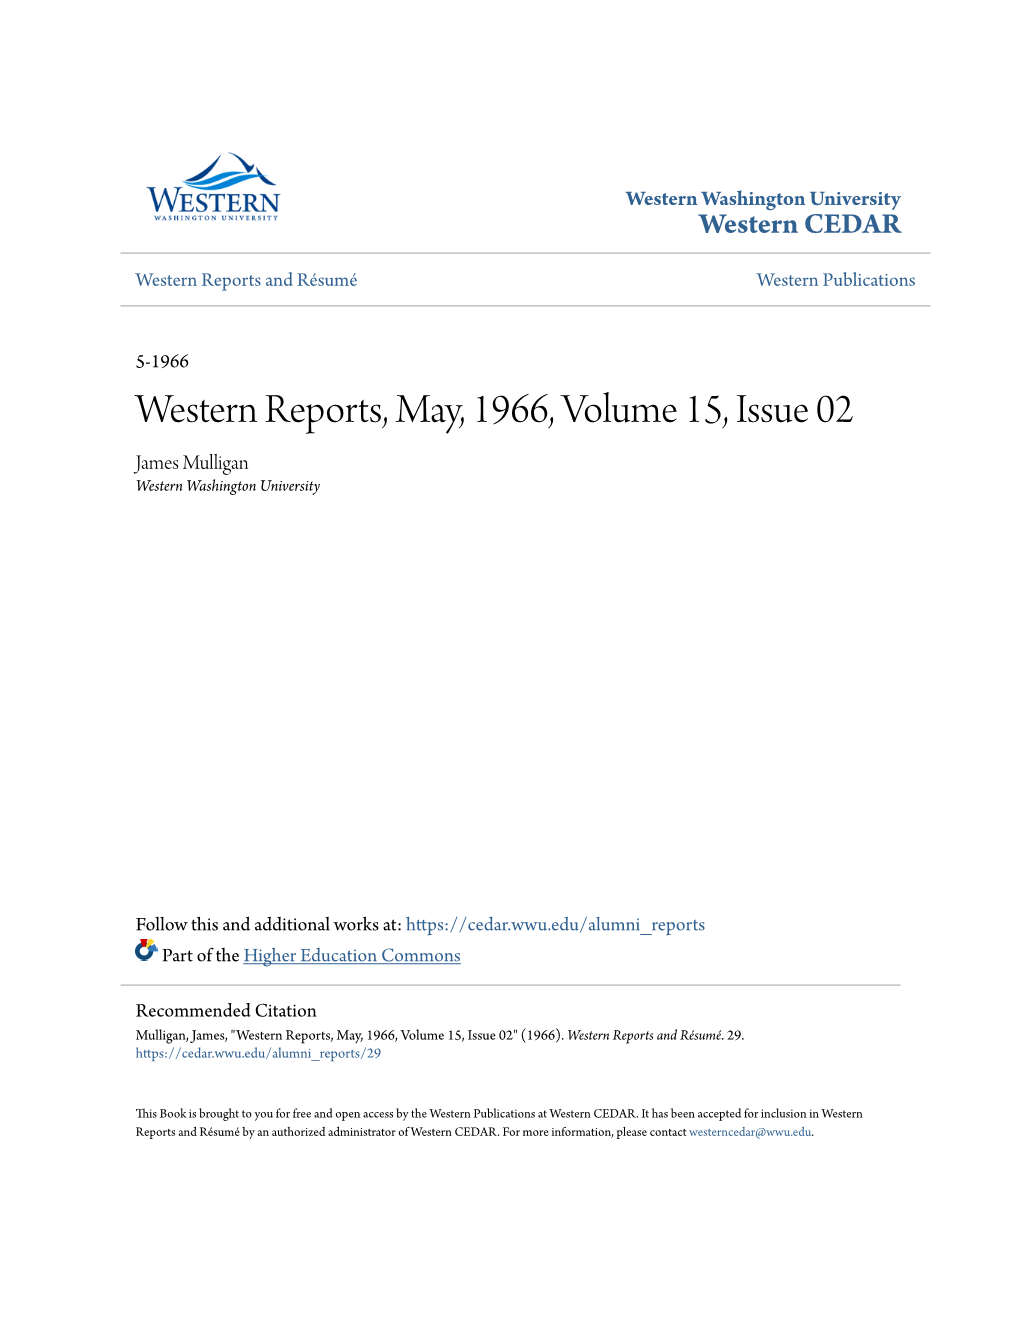 Western Reports, May, 1966, Volume 15, Issue 02 James Mulligan Western Washington University